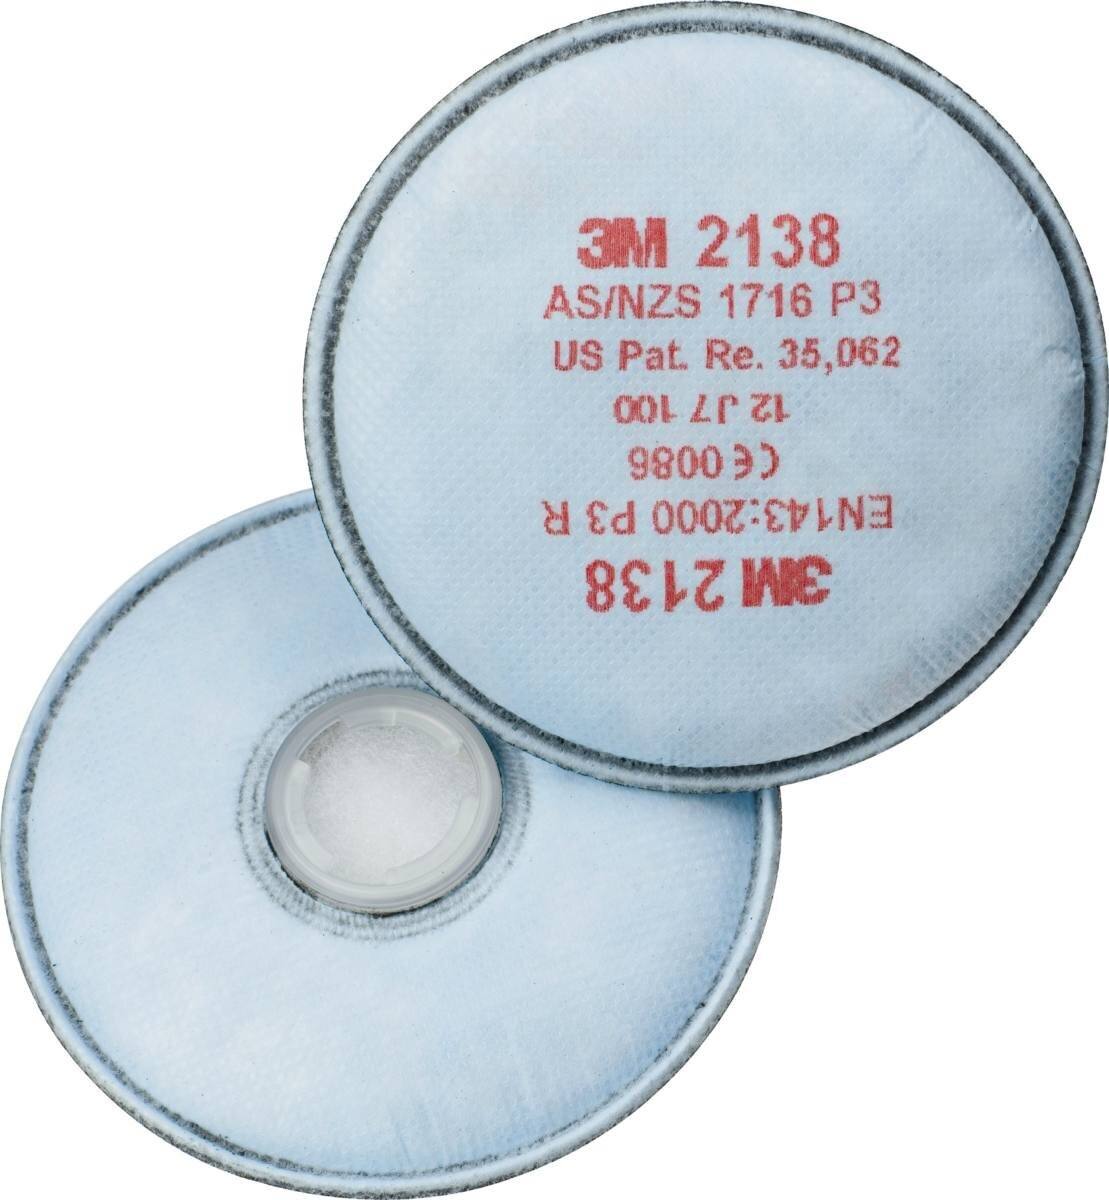 3M 2138 P3R Partikelfilter mit Aktivkohle mit zusätzlichem Schutz gegen organische Gase und Dämpfe unter Grenzwert sowie Ozon bis zum 10-fachen des Grenzwertes. Ideal zum Schweissen